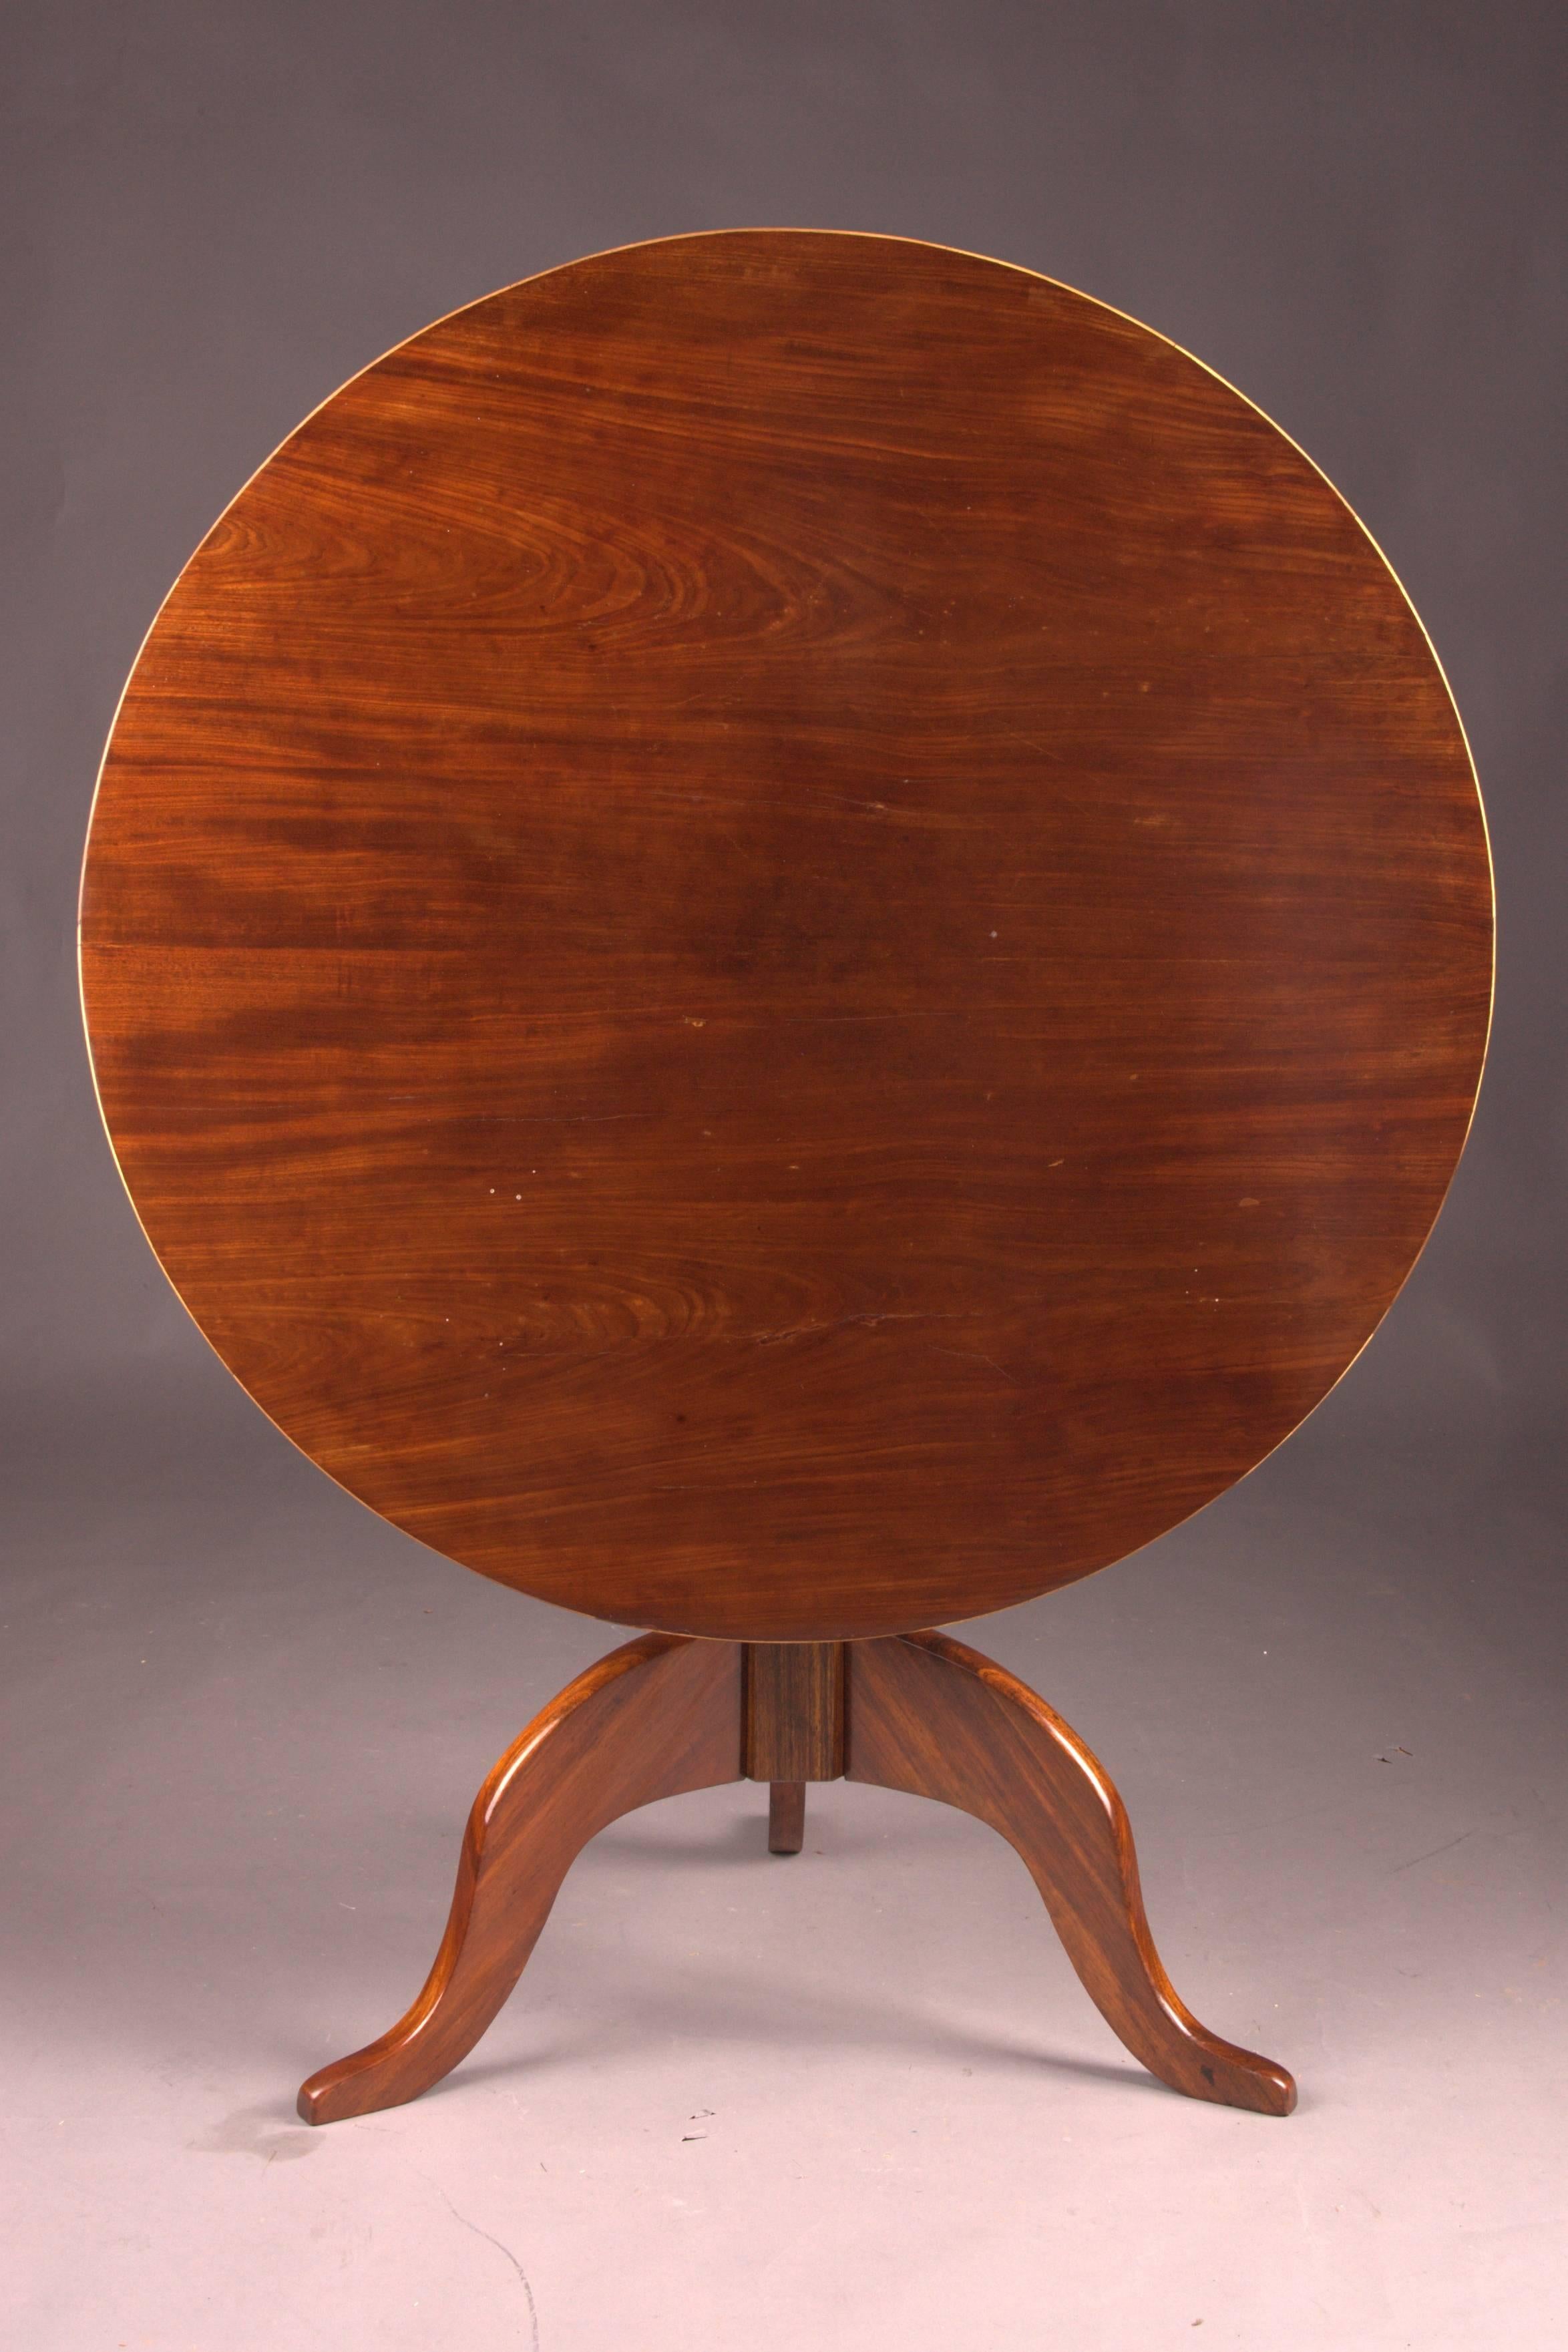 Original Antique Round Biedermeier Folding Table, circa 1820 Mahogany veneer In Good Condition For Sale In Berlin, DE